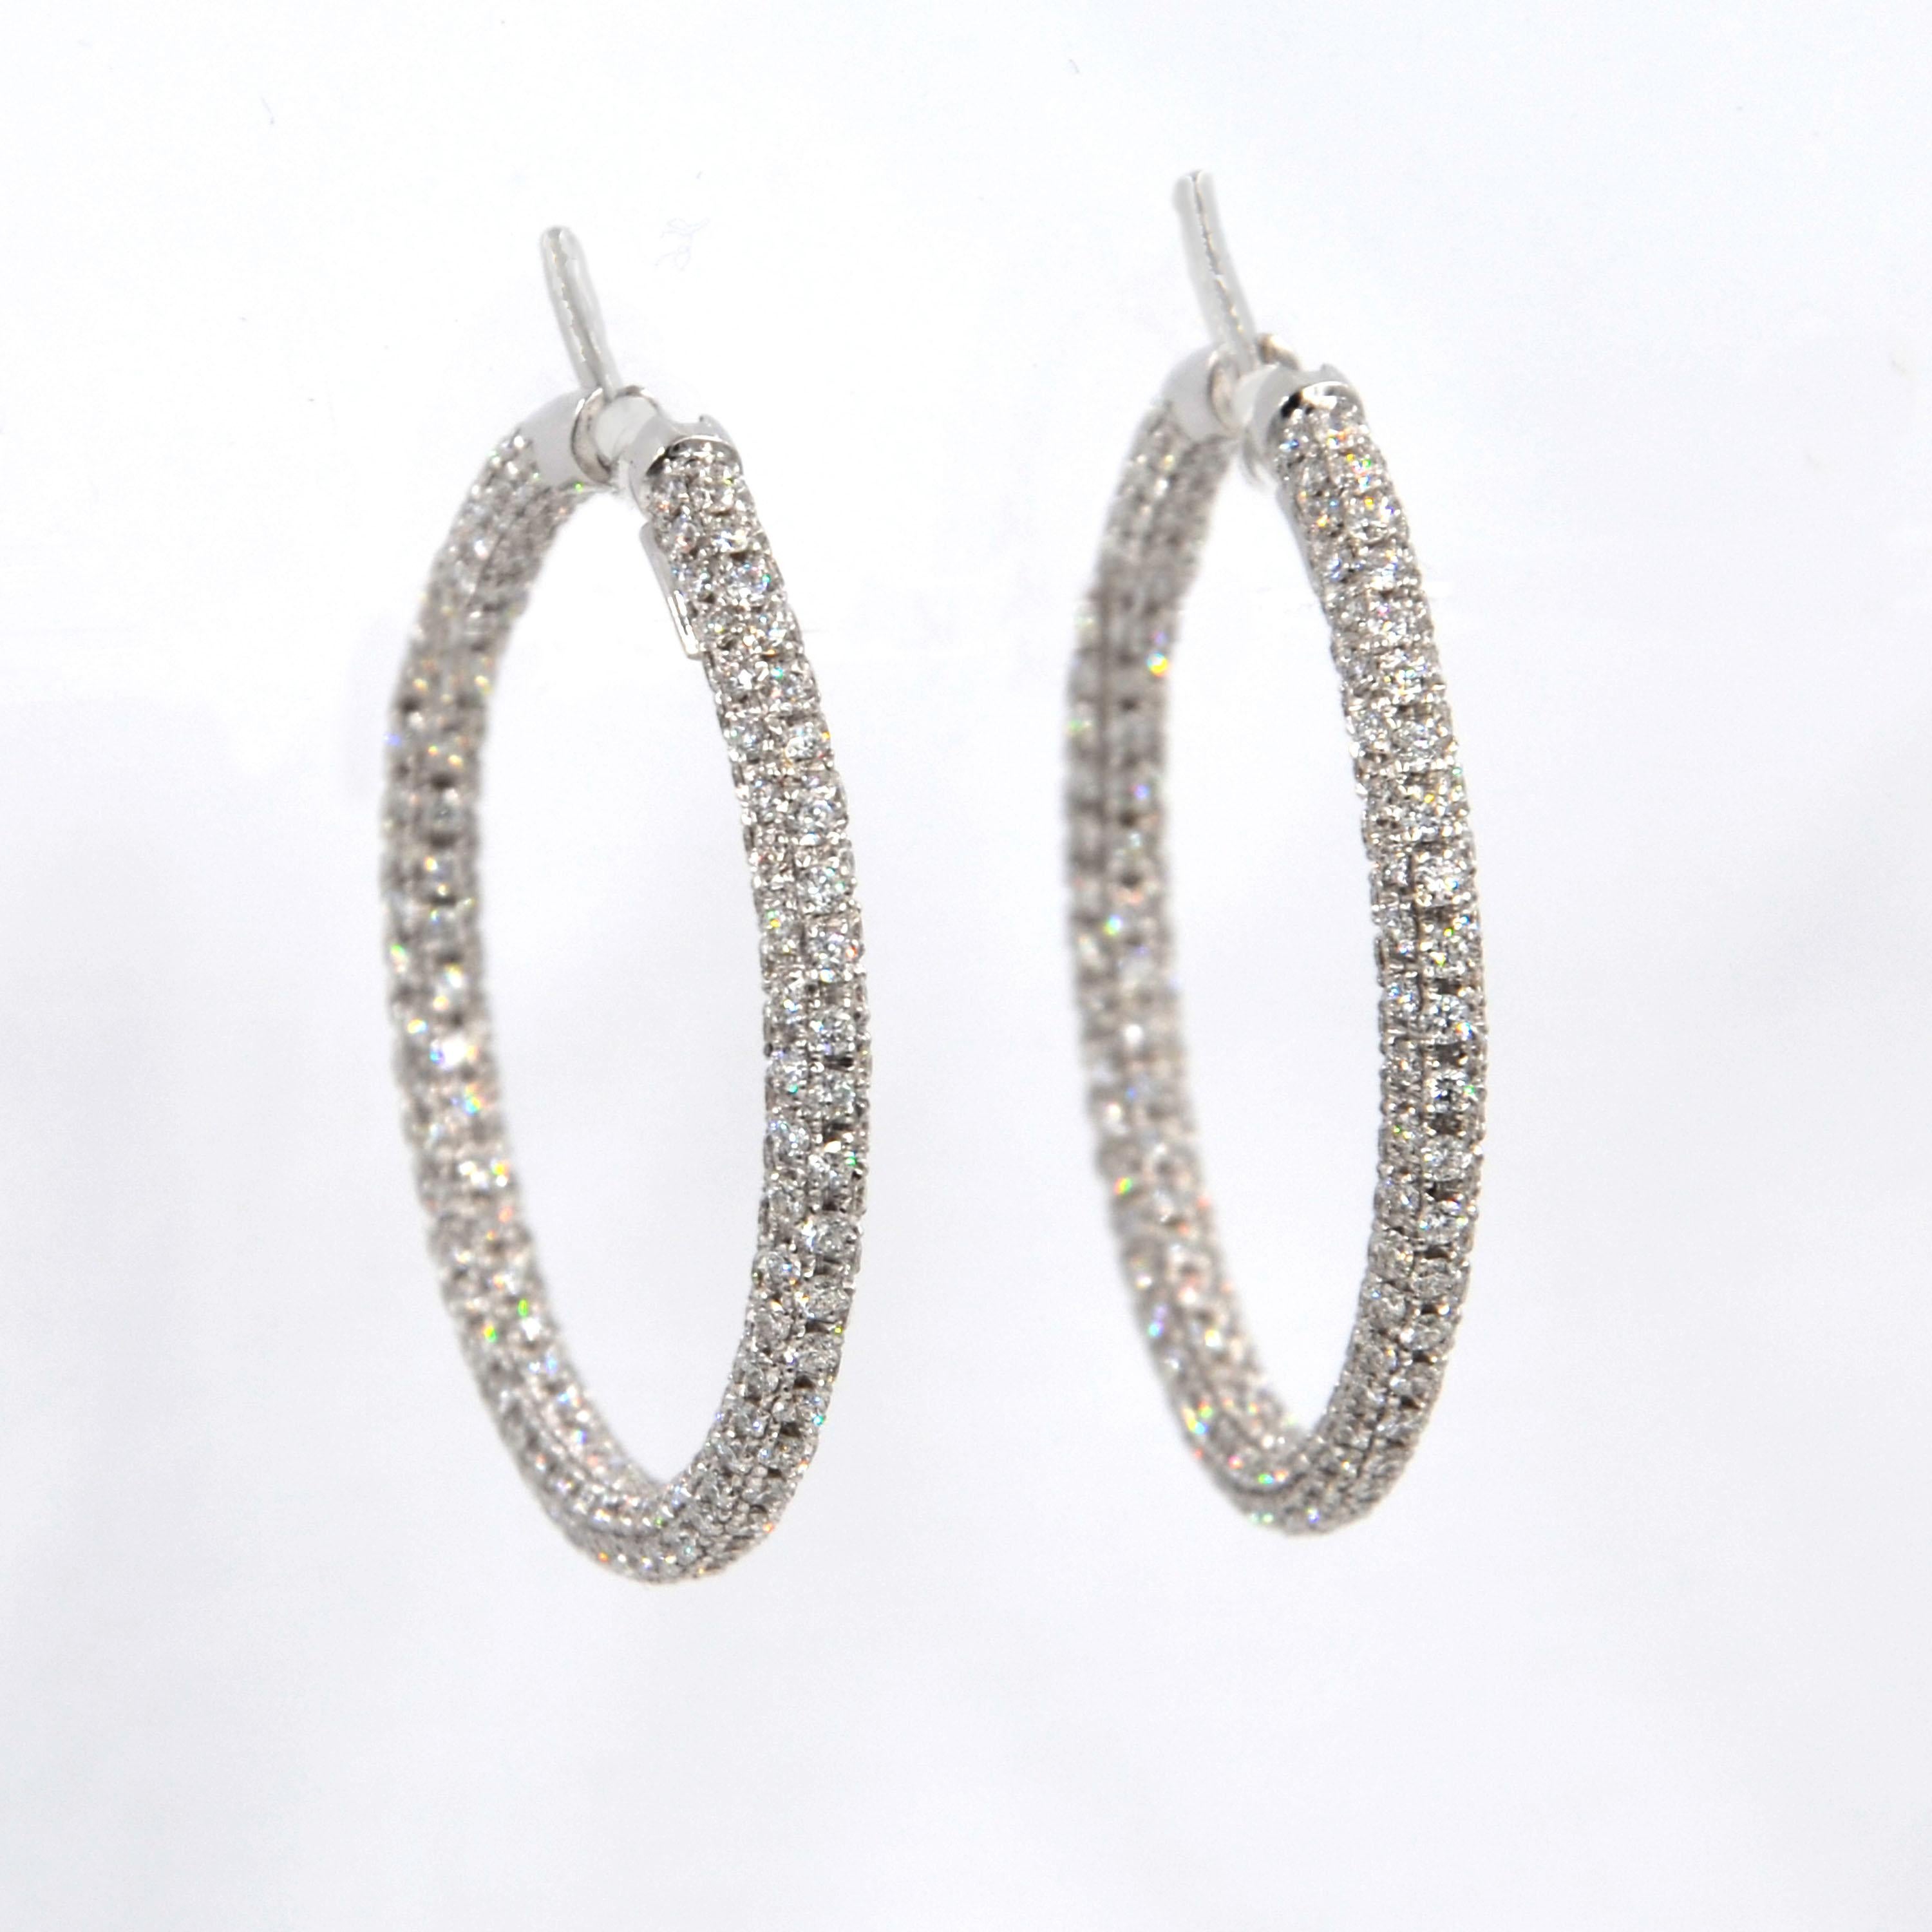 Contemporary Garavelli 18 Karat White Gold Diamond Eternity Hoop Earrings